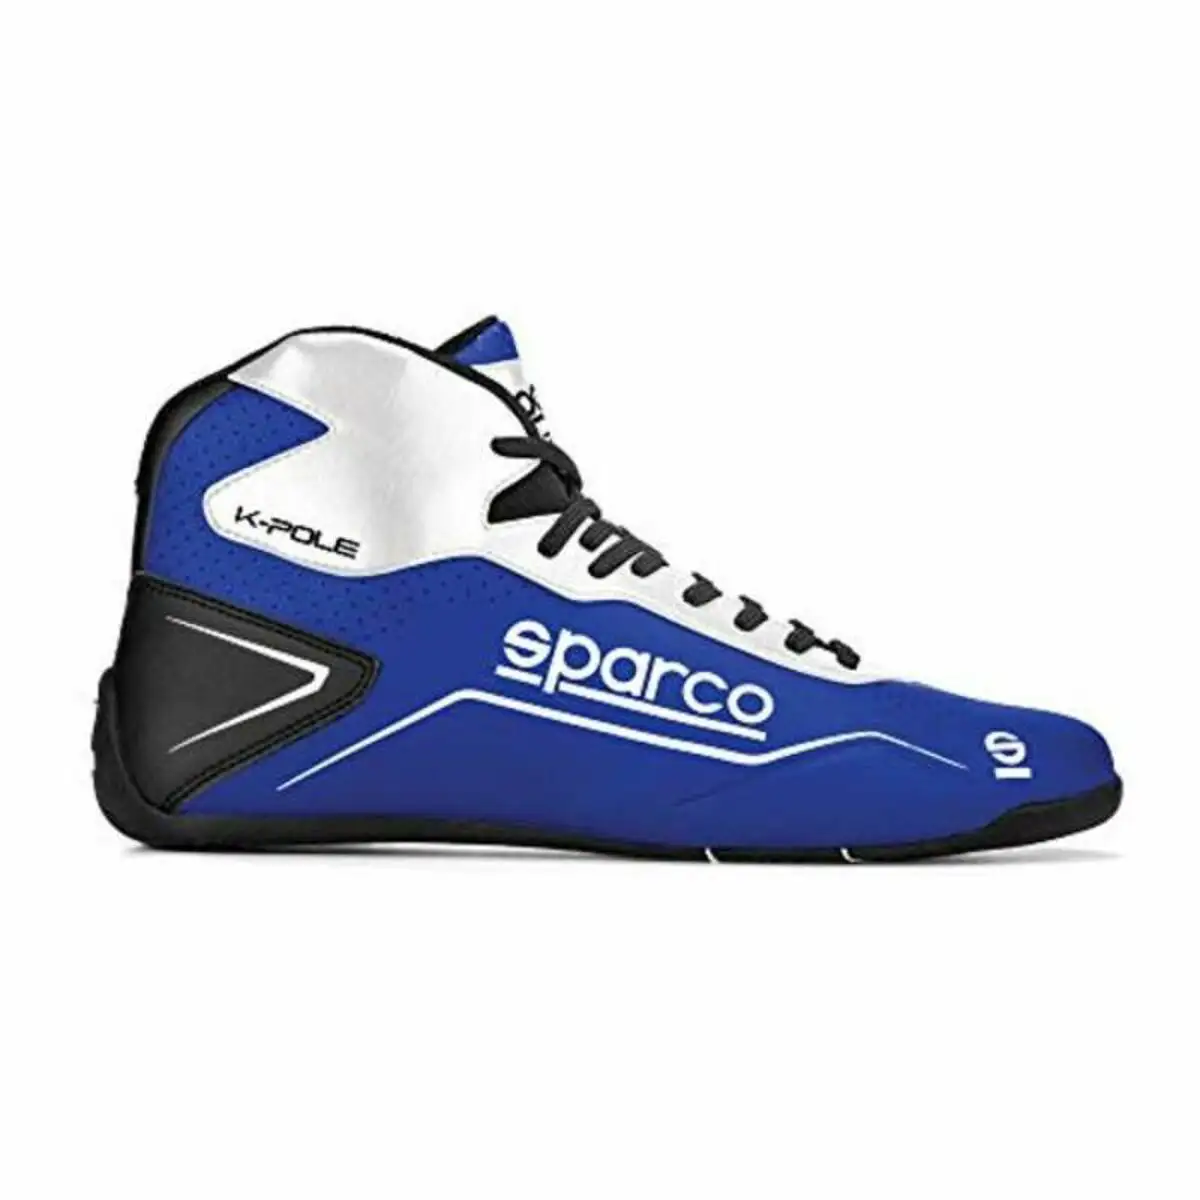 Chaussures de course sparco k pole bleu talla 47_6791. DIAYTAR SENEGAL - Votre Destinée Shopping Personnalisée. Plongez dans notre boutique en ligne et créez votre propre expérience de shopping en choisissant parmi nos produits variés.